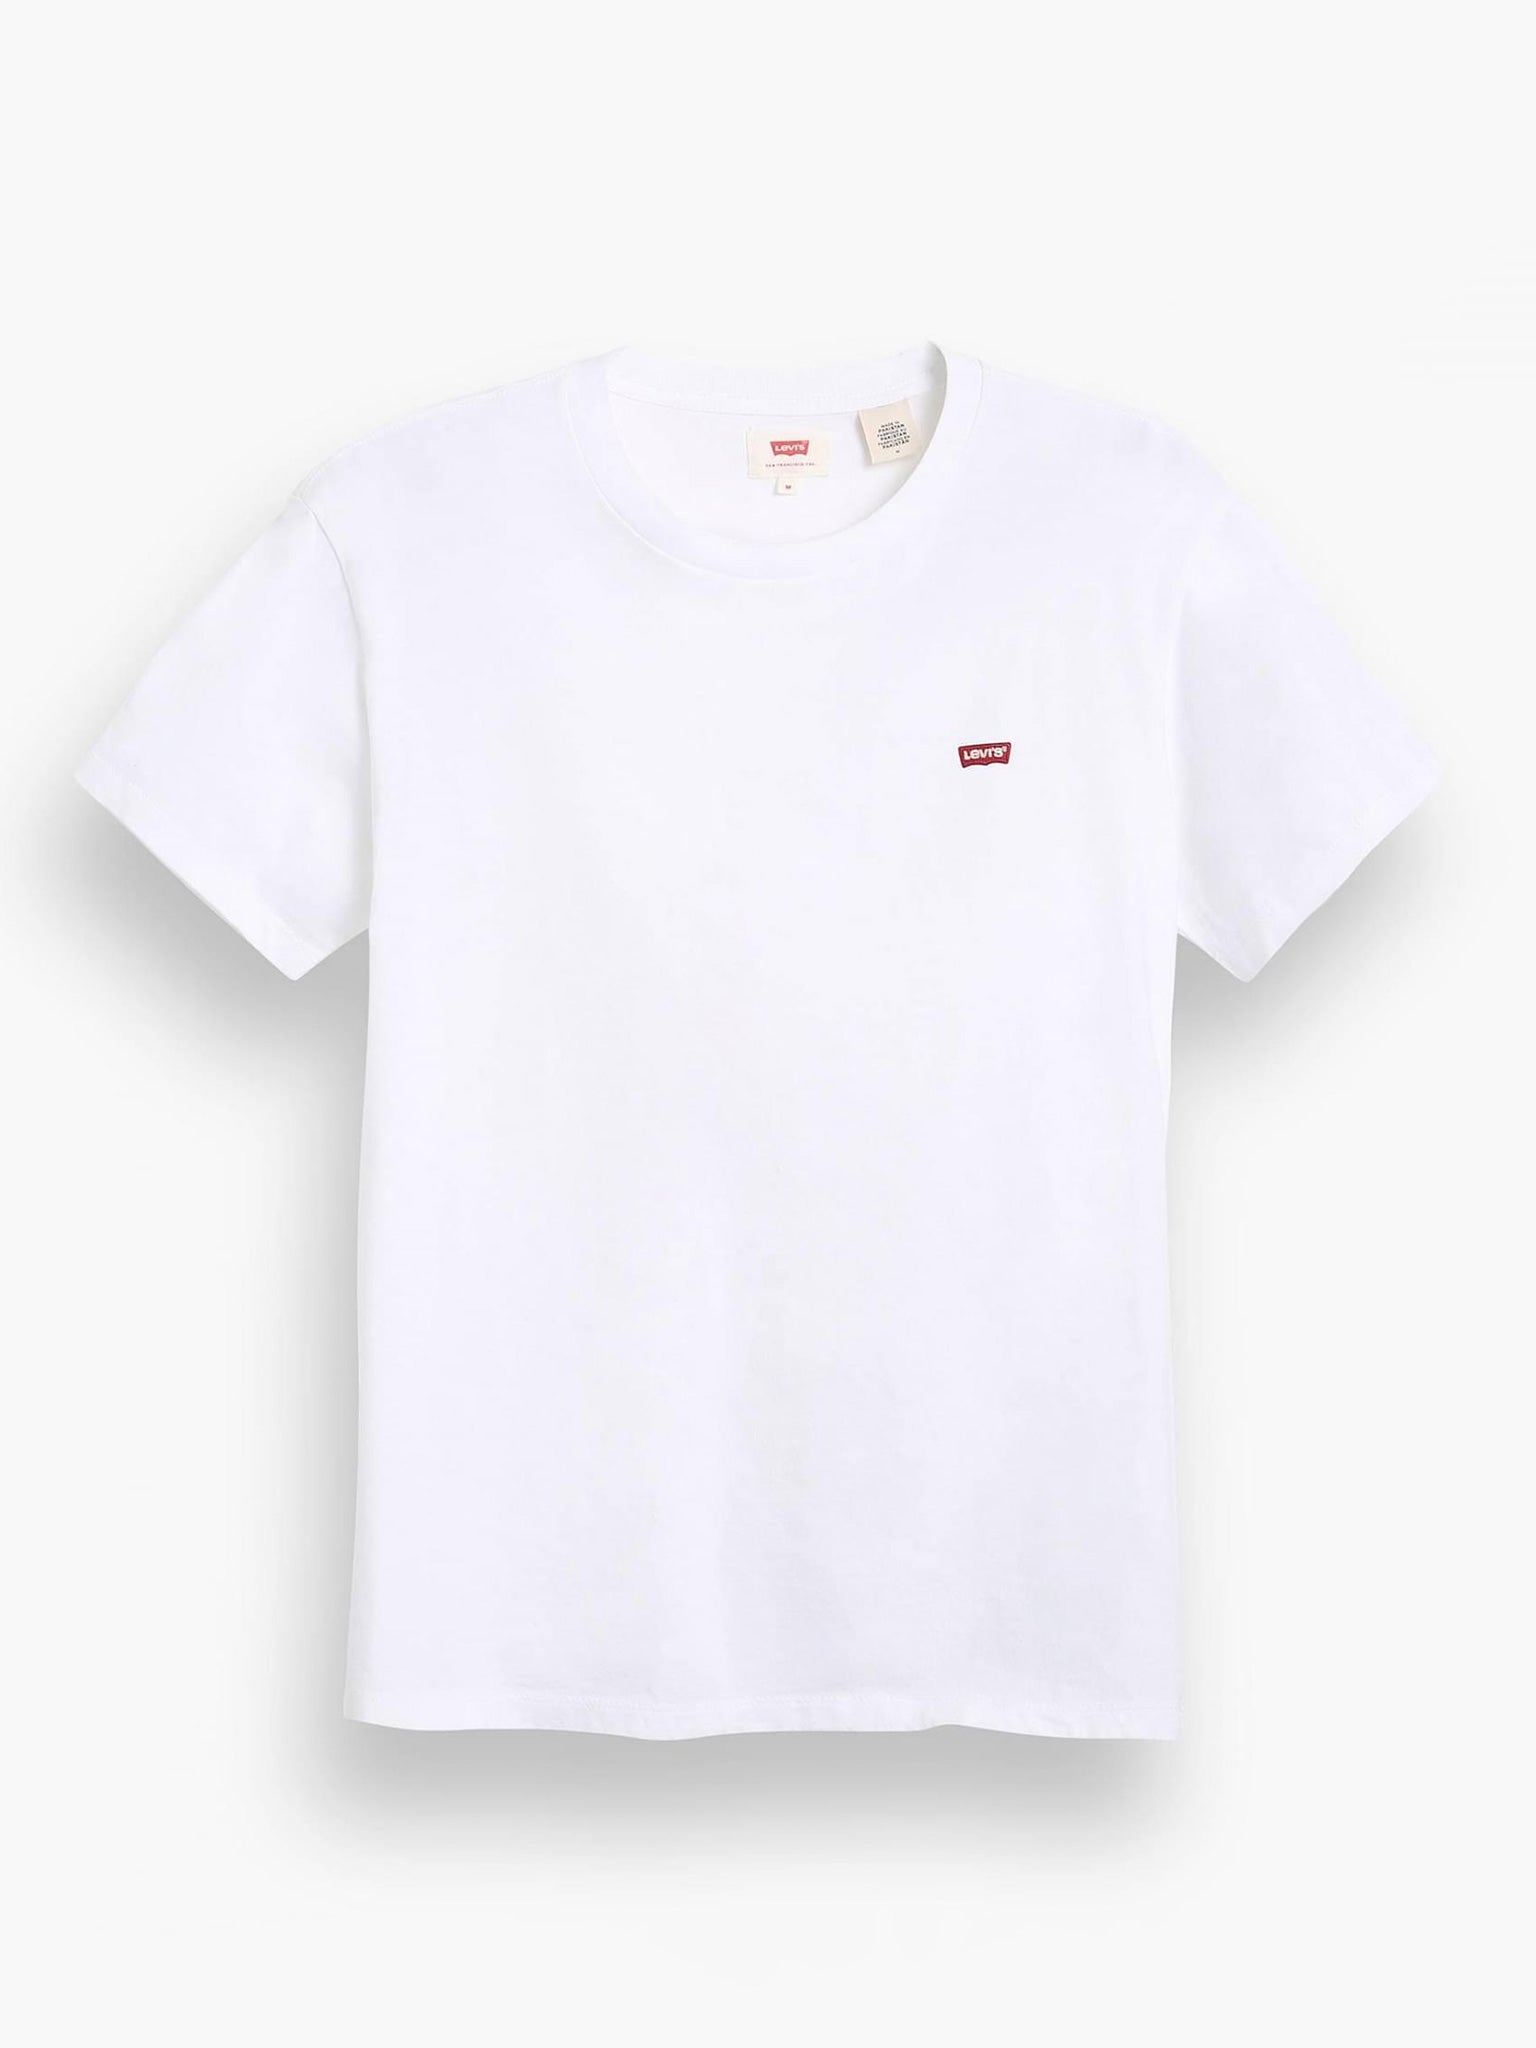 Ανδρικό t-shirt Original Housemark Tee 566050000 | 566050000